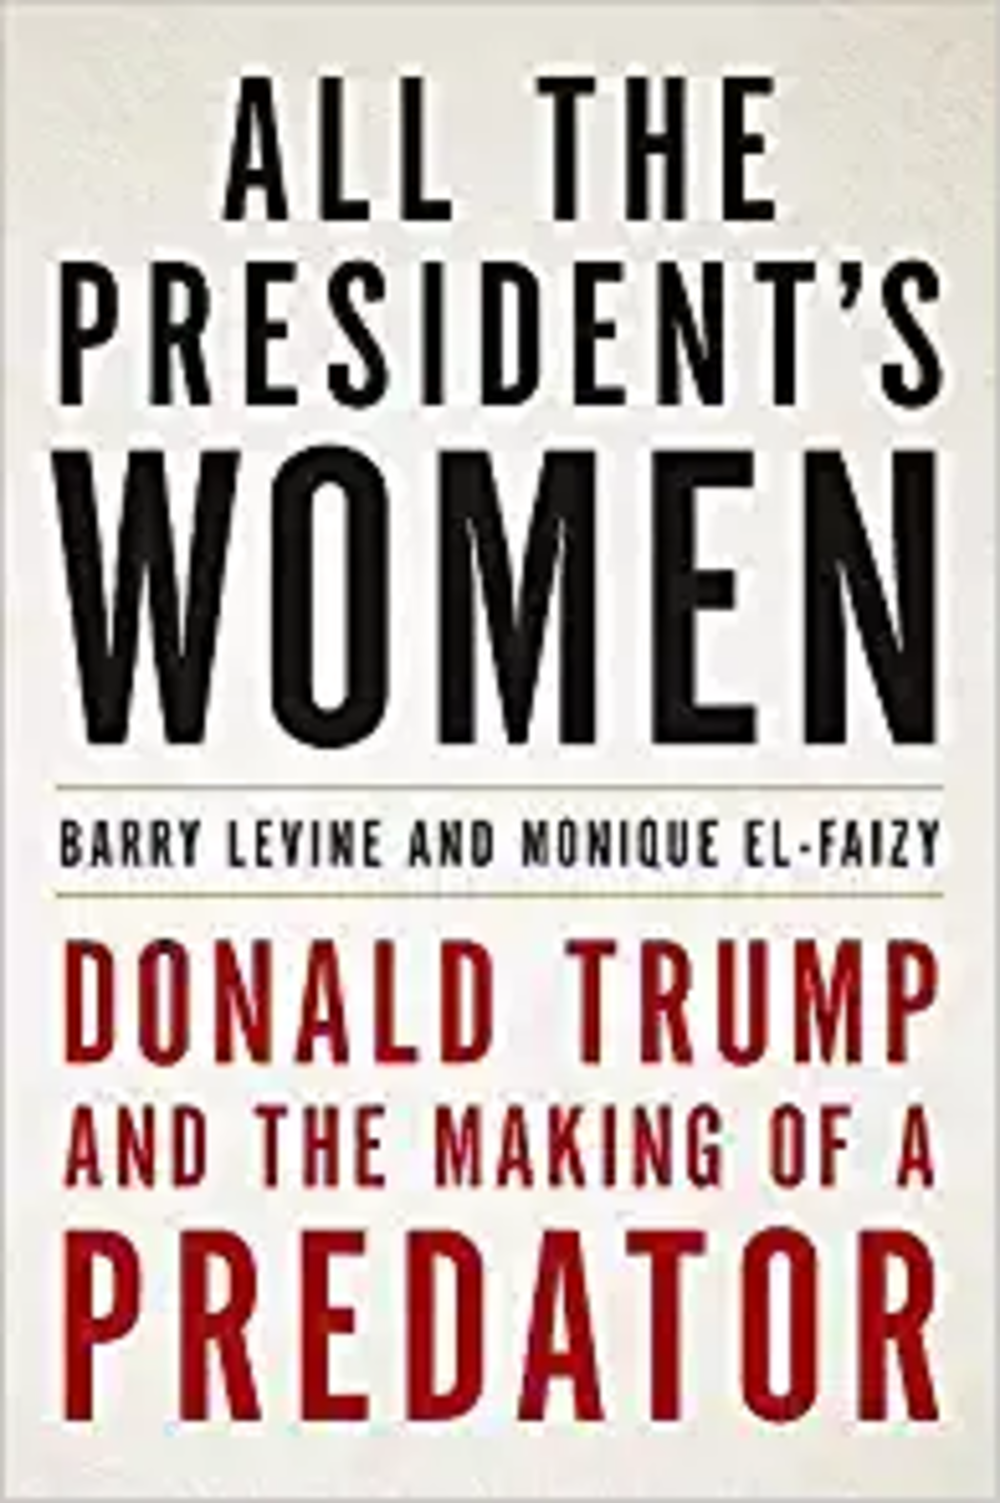 All the President's Women